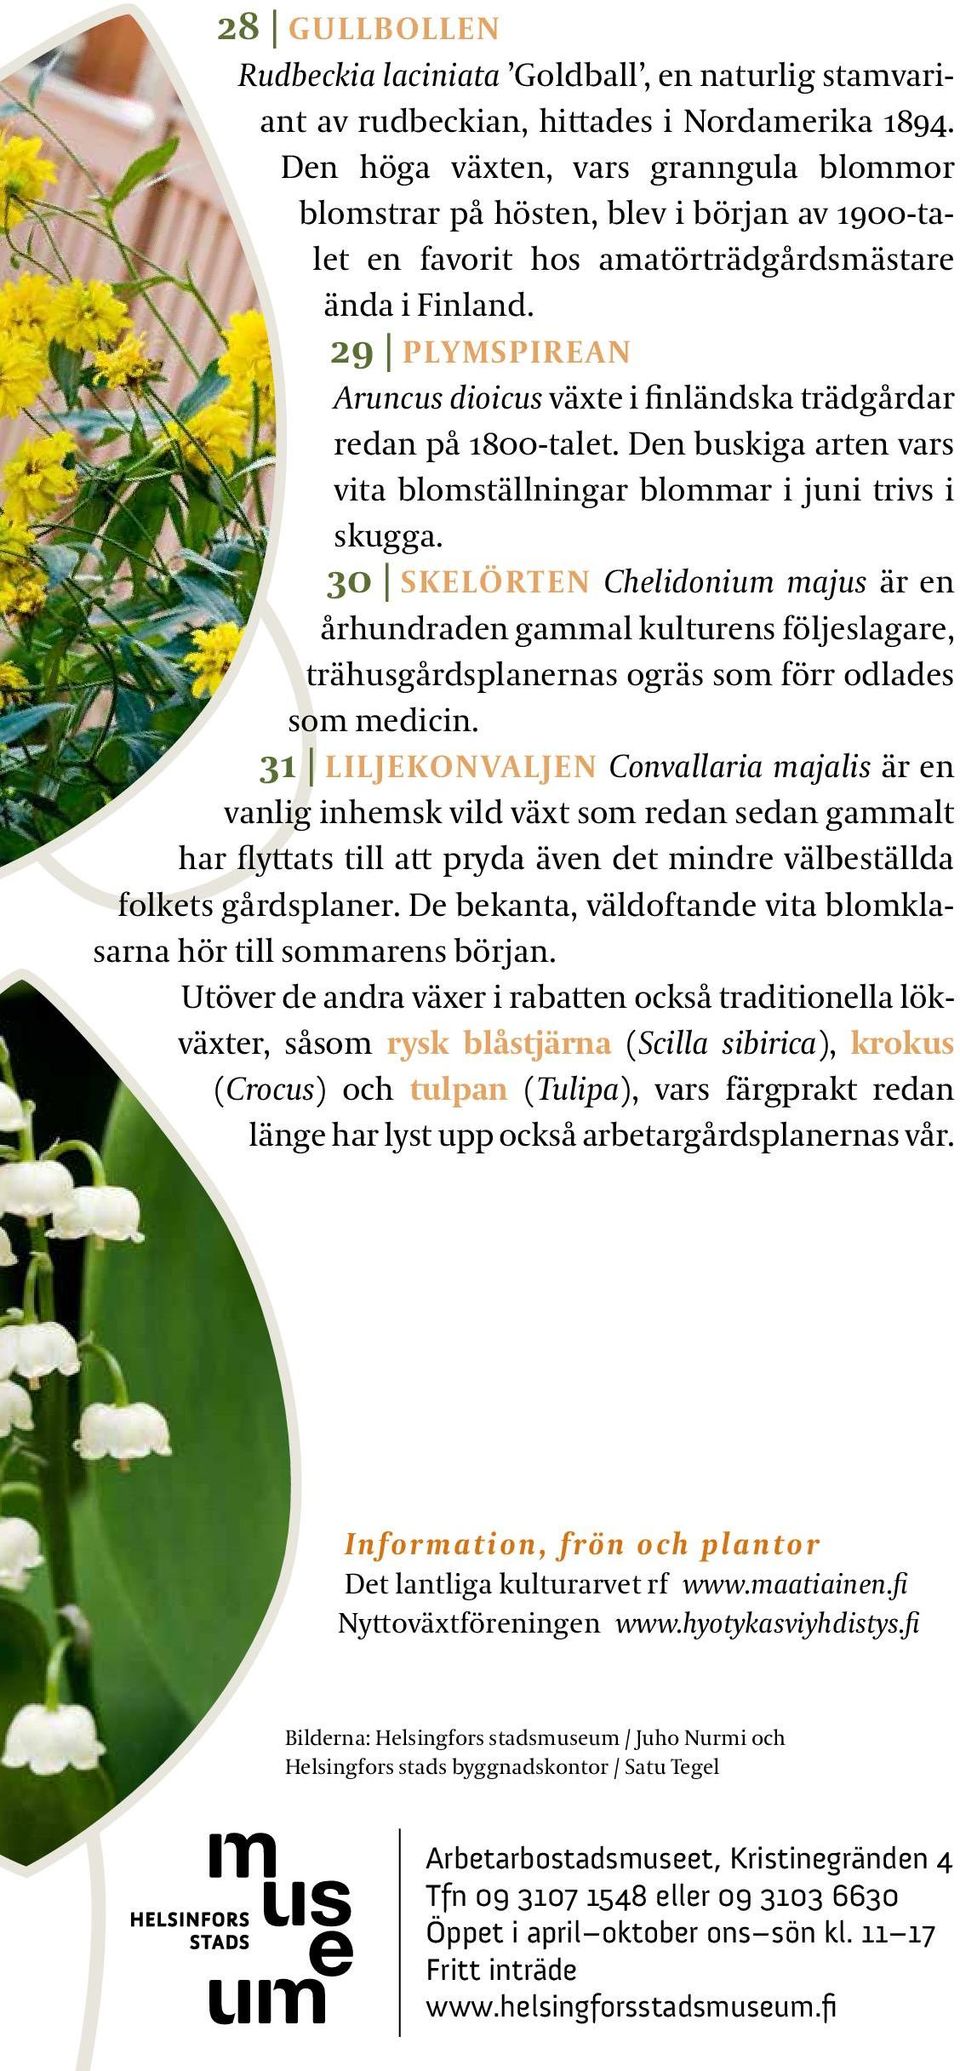 29 PLYMSPIREAN Aruncus dioicus växte i finländska trädgårdar redan på 1800-talet. Den buskiga arten vars vita blomställningar blommar i juni trivs i skugga.